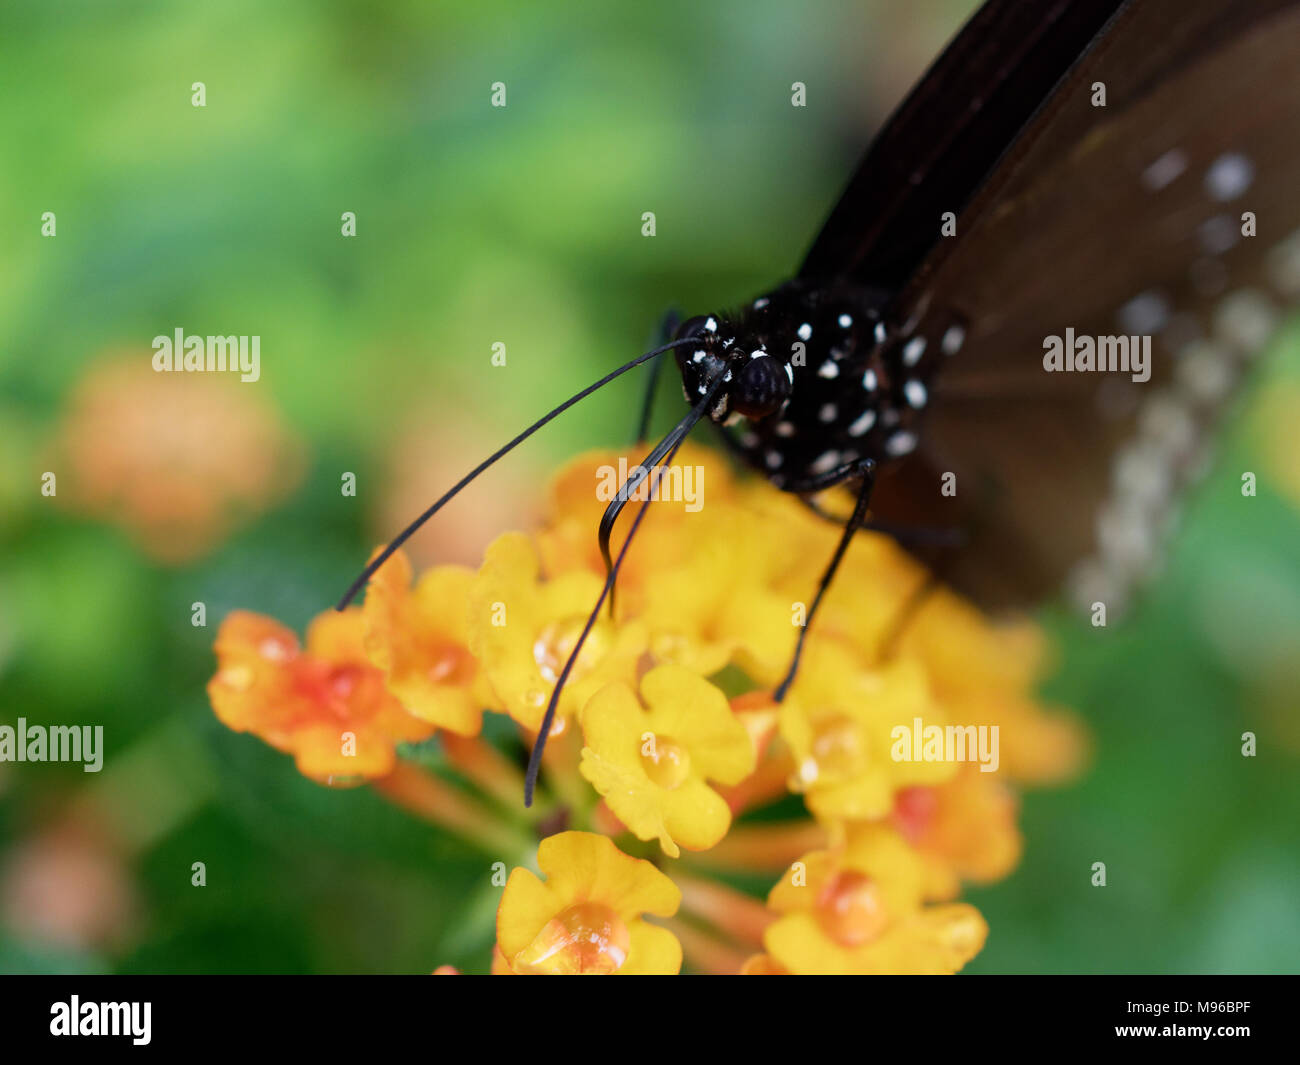 Schmetterling schwarz mit weißen Fleck in der Nähe aufsaugen oder Nektar Saft einer gelben Blüte Blume über grünes Blatt Hintergrund in einem Garten Stockfoto